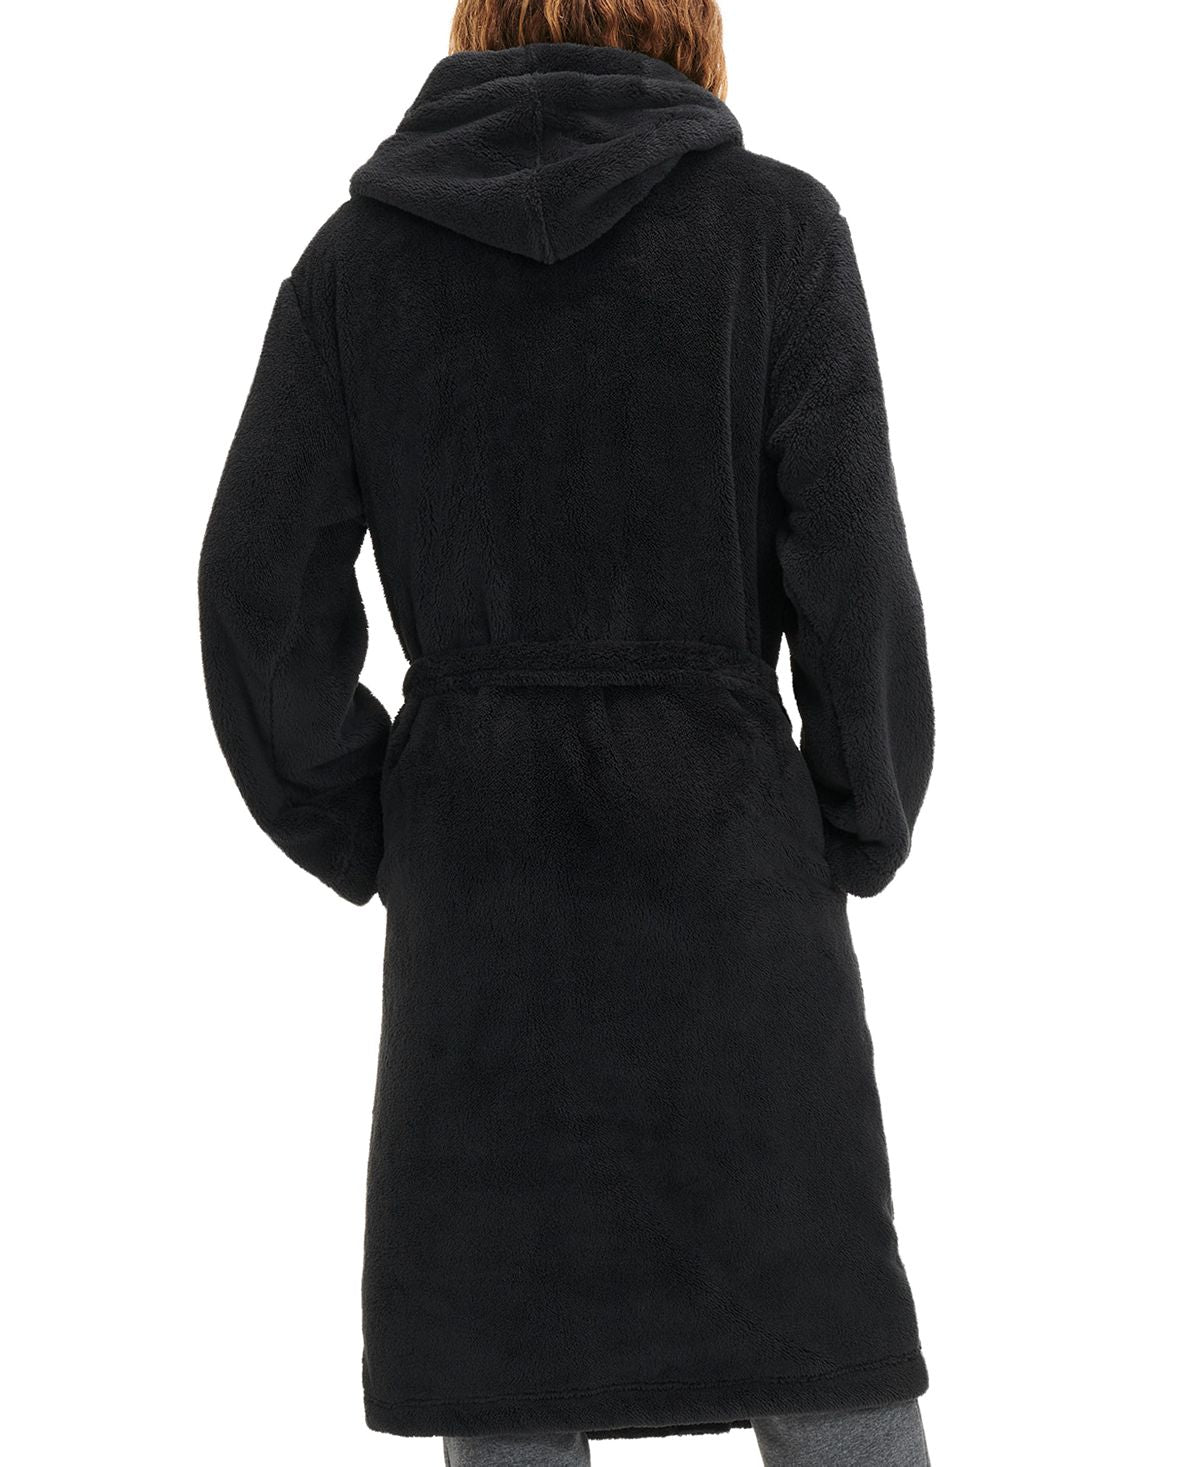 Ugg Fleece Hooded Robe Ink Black